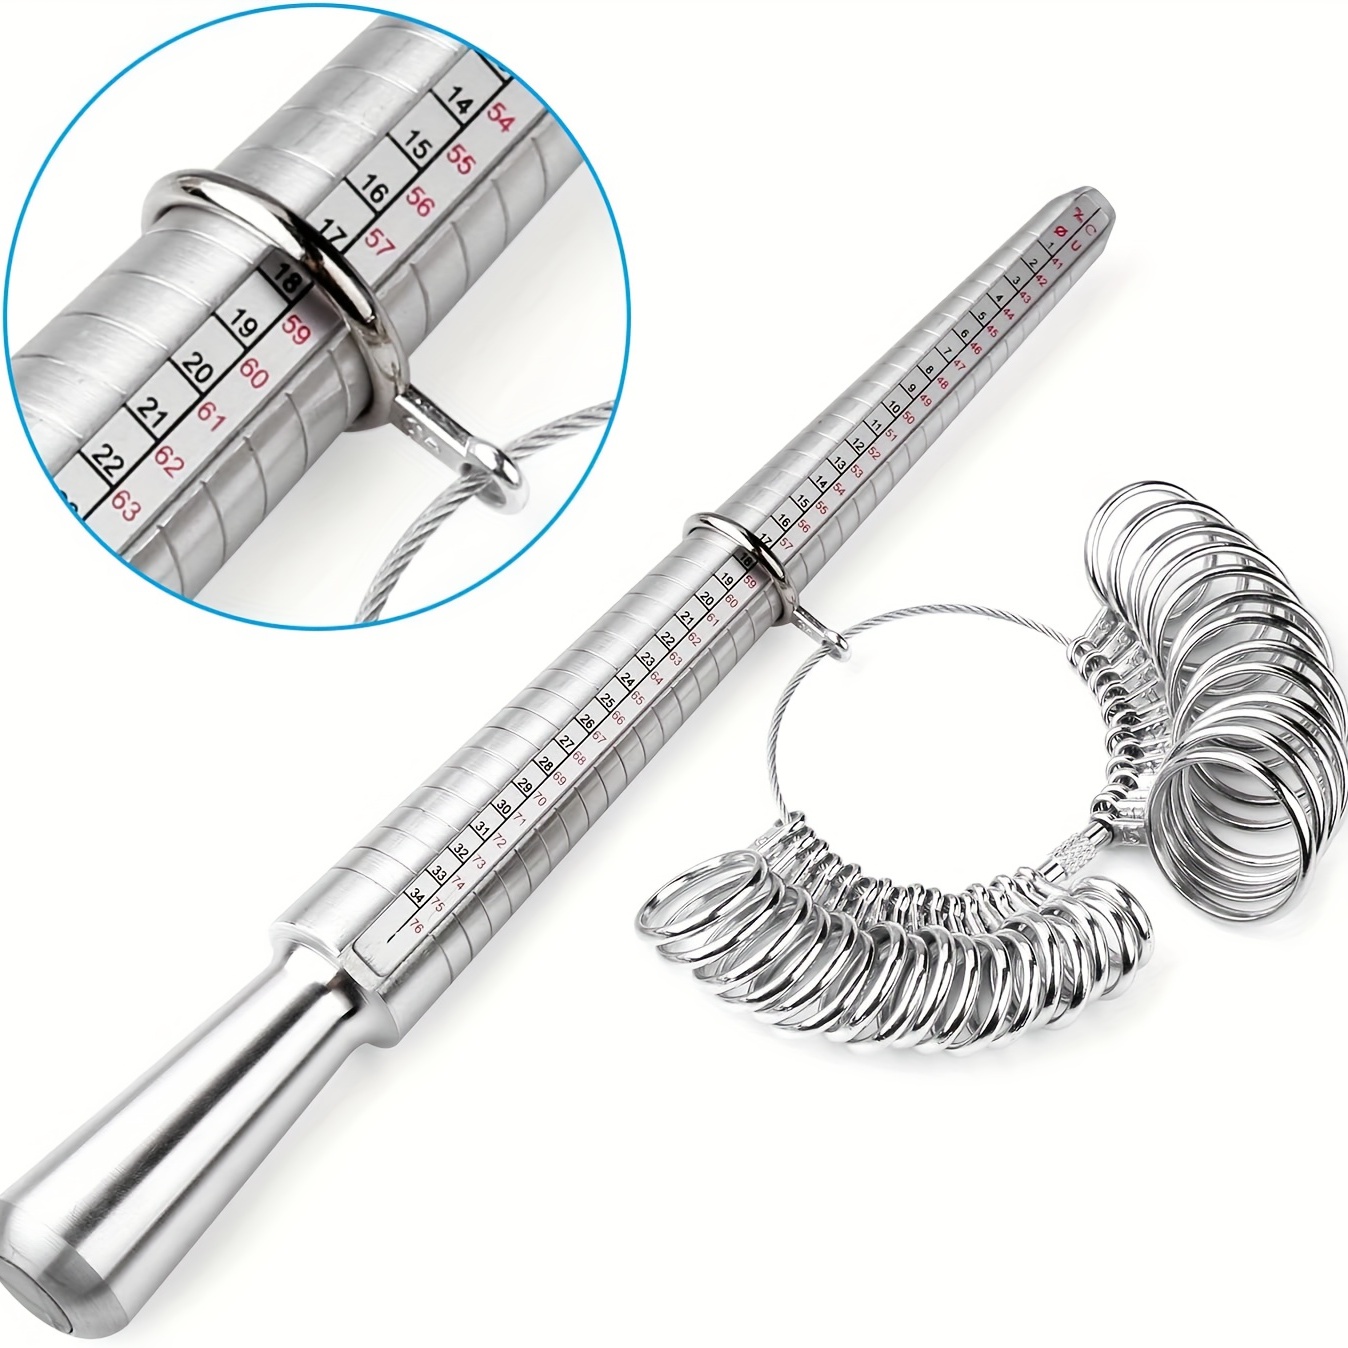 Ring Sizer Measuring Tool Set Metal Ring Sizers Stainless Steel Ring Gauges  Finger Sizer & Ring Mandrel Aluminuml (Size 1-13), 27 Pcs (Ring Sizer Set)